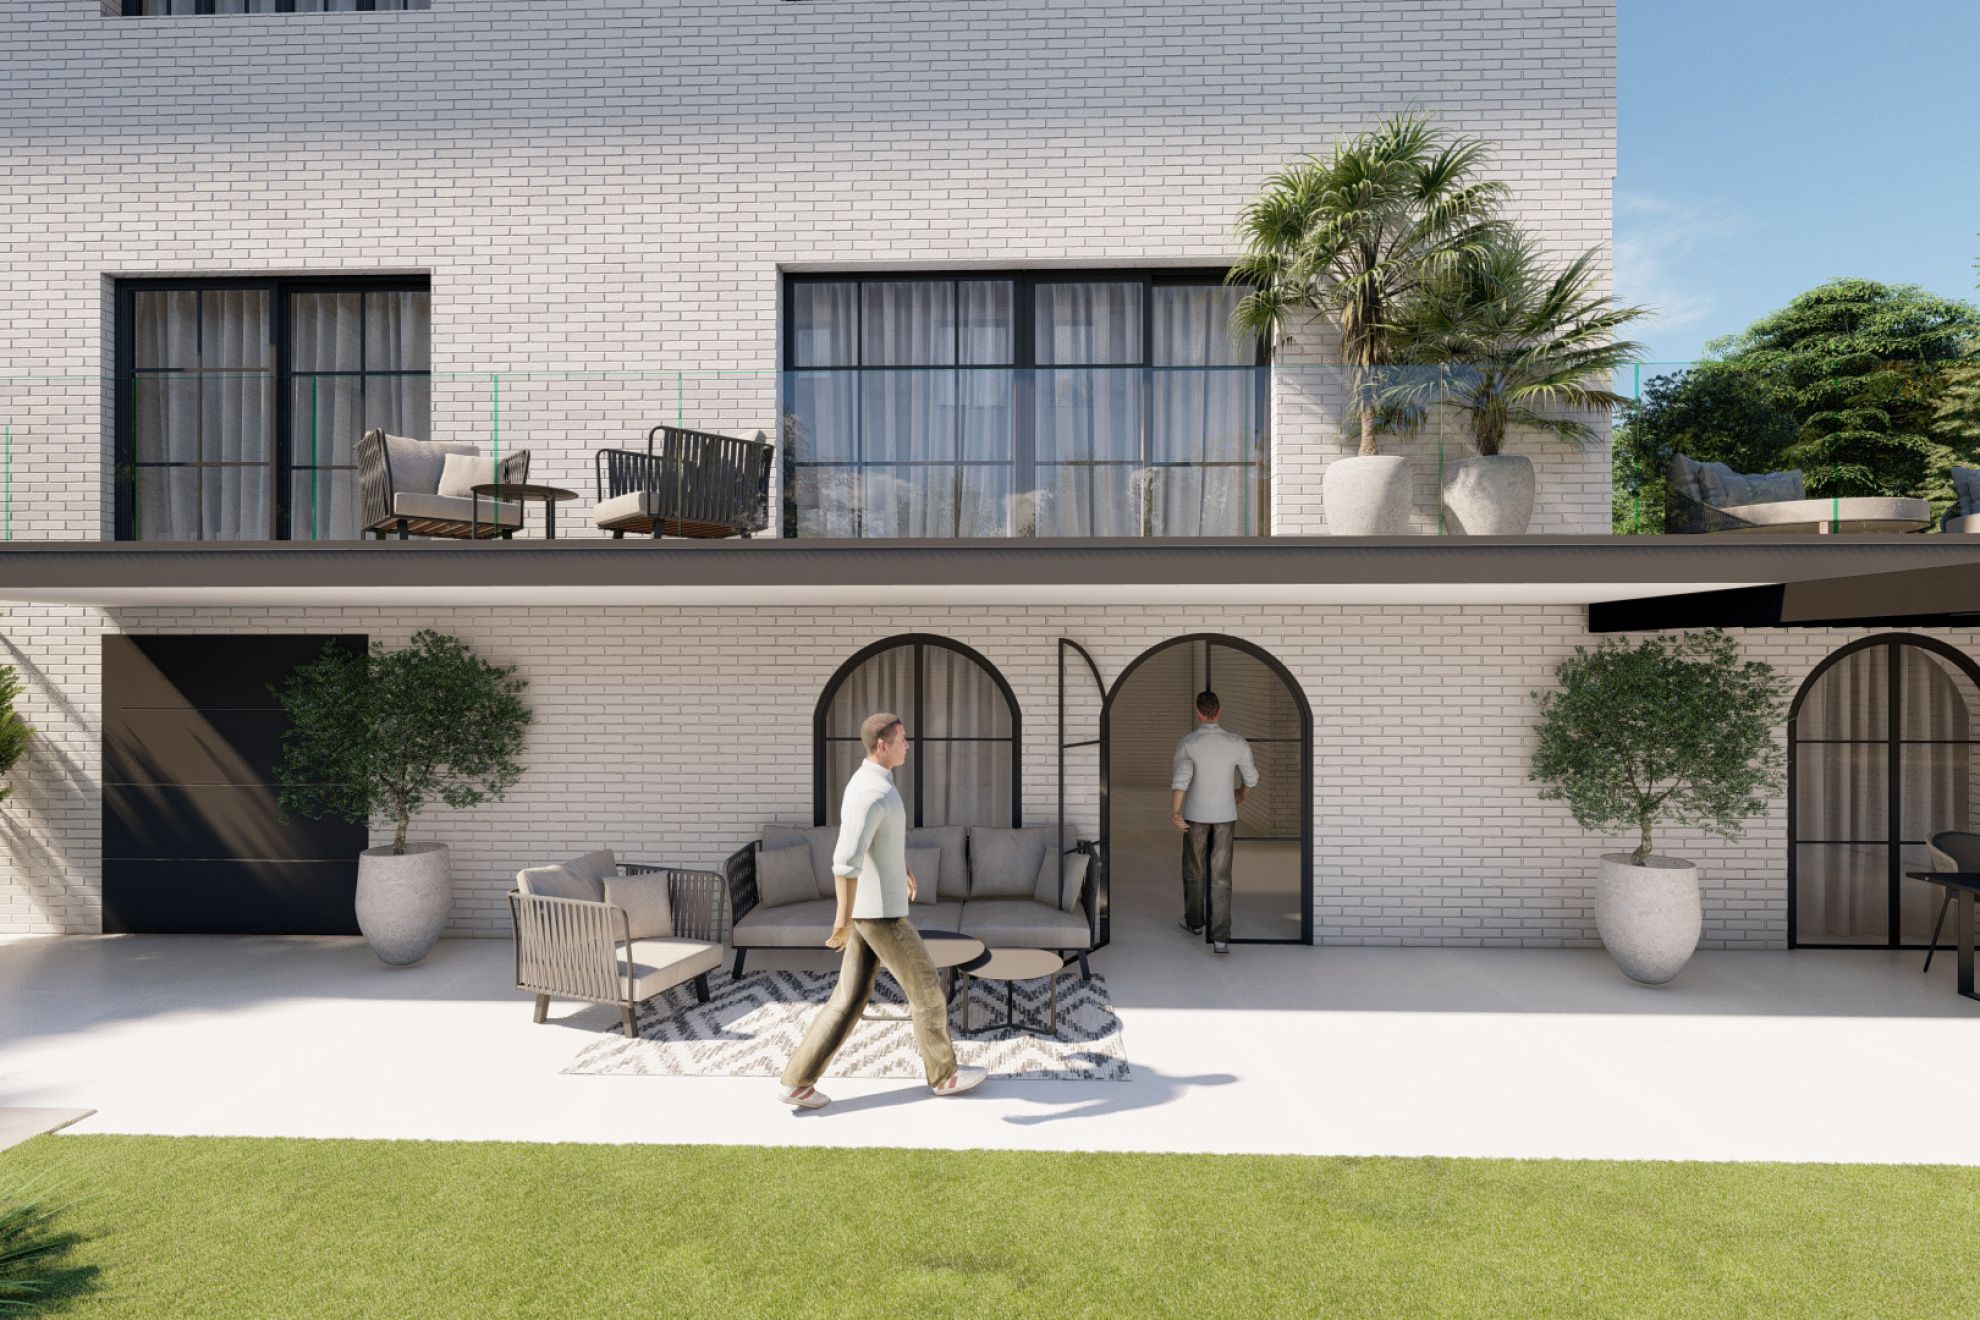 Ref. 2039 - En pleno golf de Sant Cugat proyecto de hacer realidad la casa de sus sueños